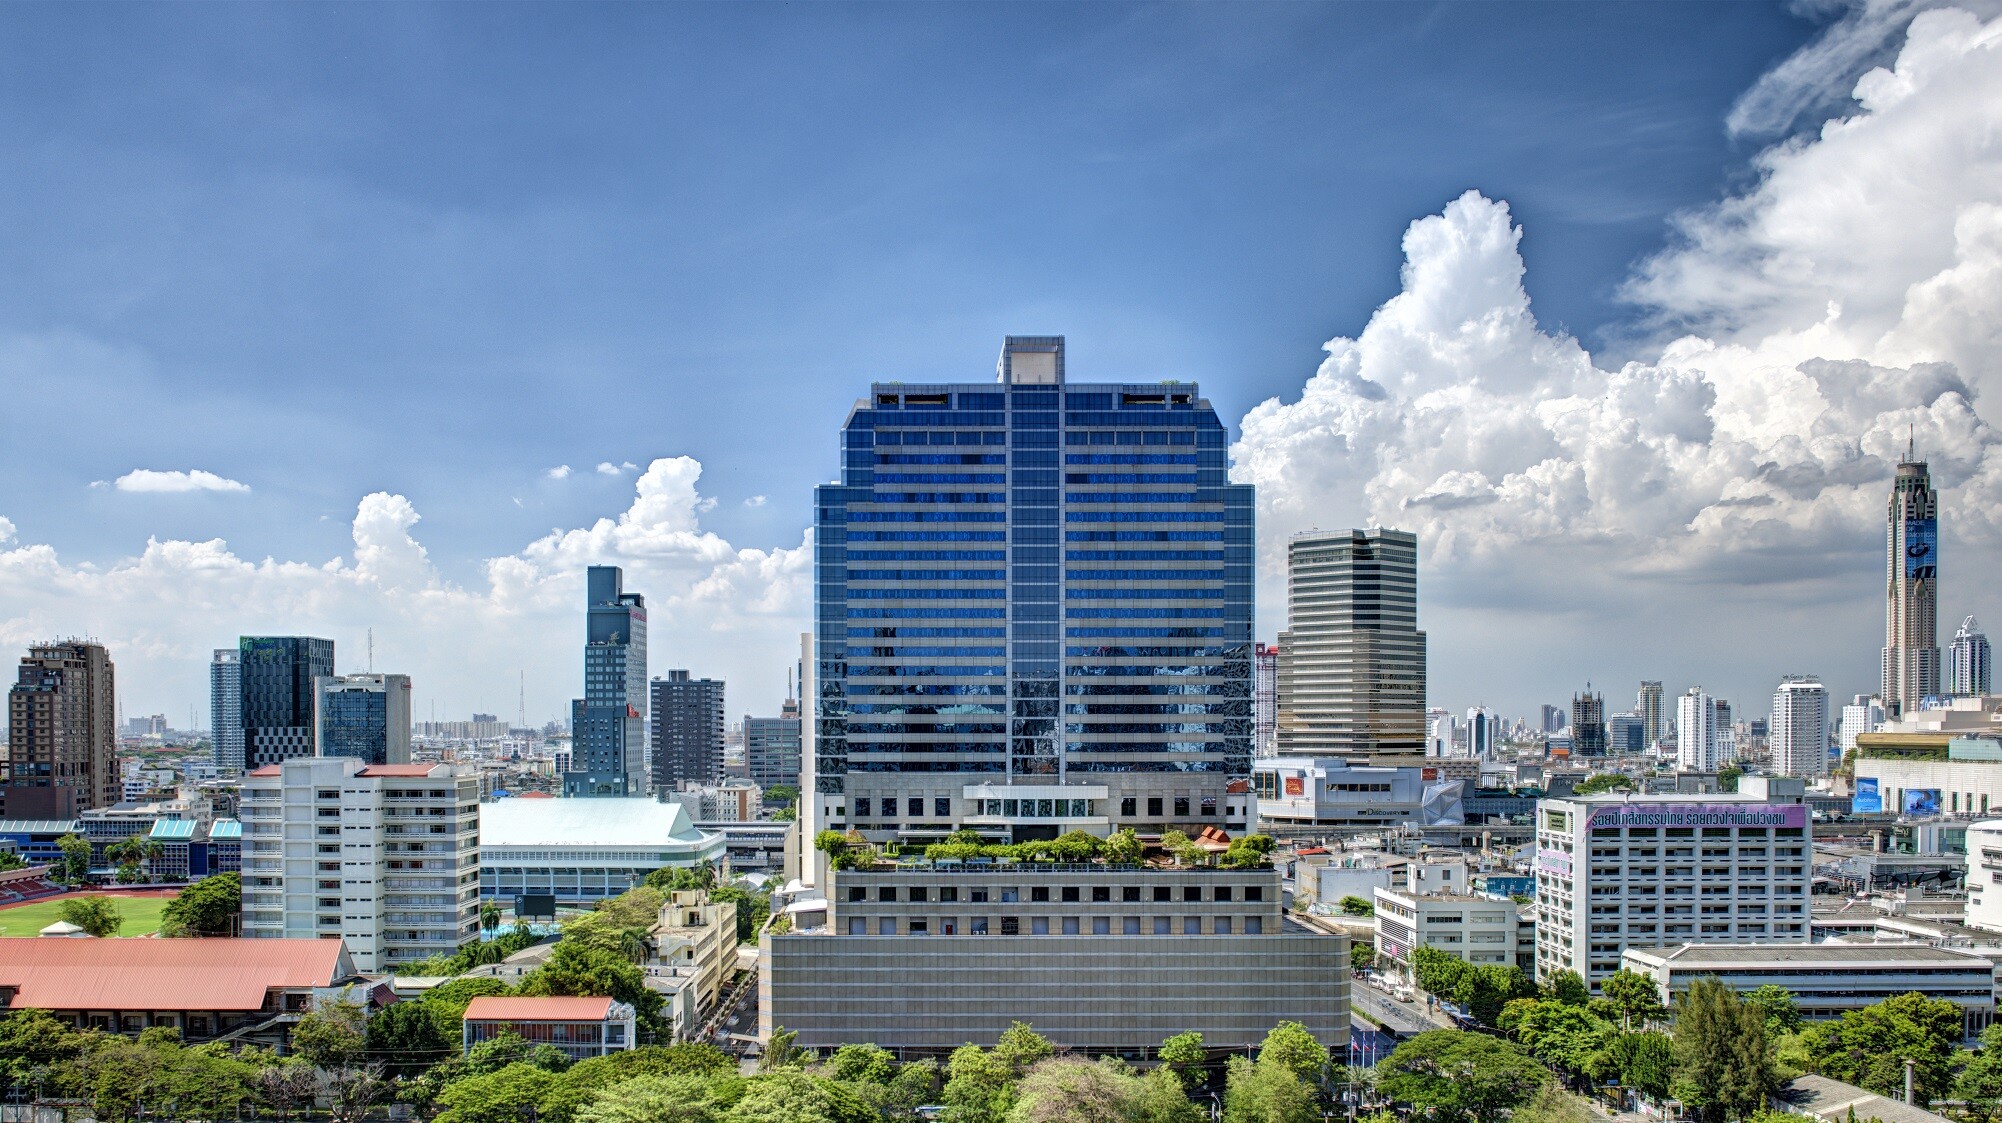 เที่ยวเมืองไทยอย่างมั่นใจ กับโปรโมชัน Test & Go ของโรงแรมปทุมวัน ปริ๊นเซส